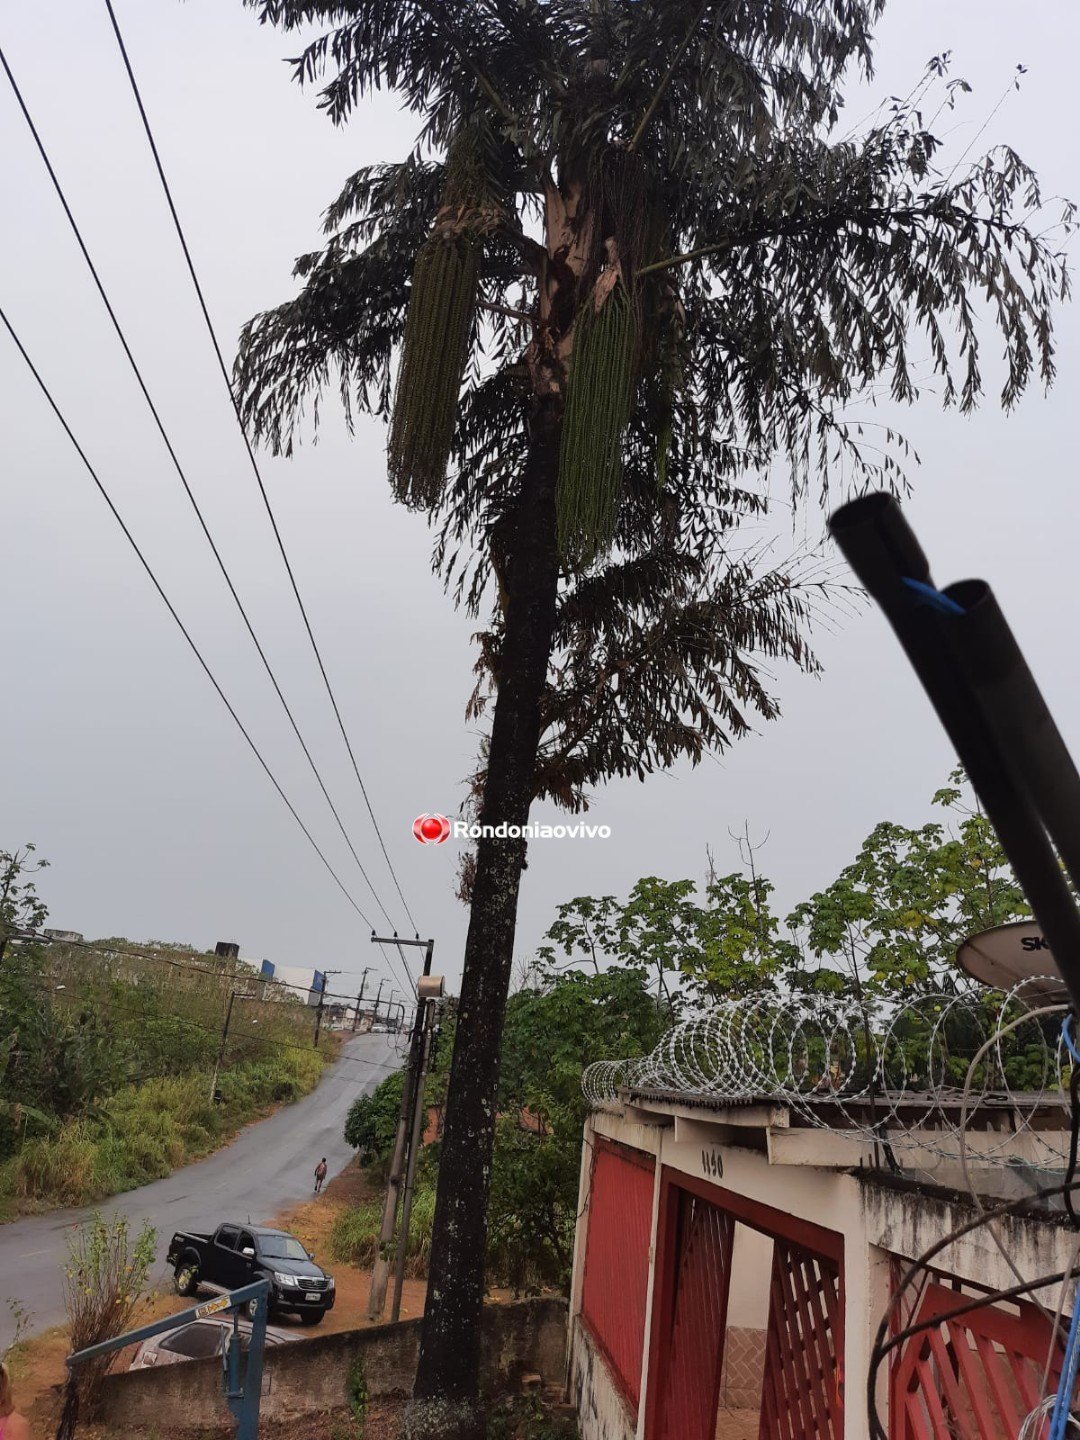 TEMPORAL: Forte tempestade derruba árvore e destrói carros em Porto Velho